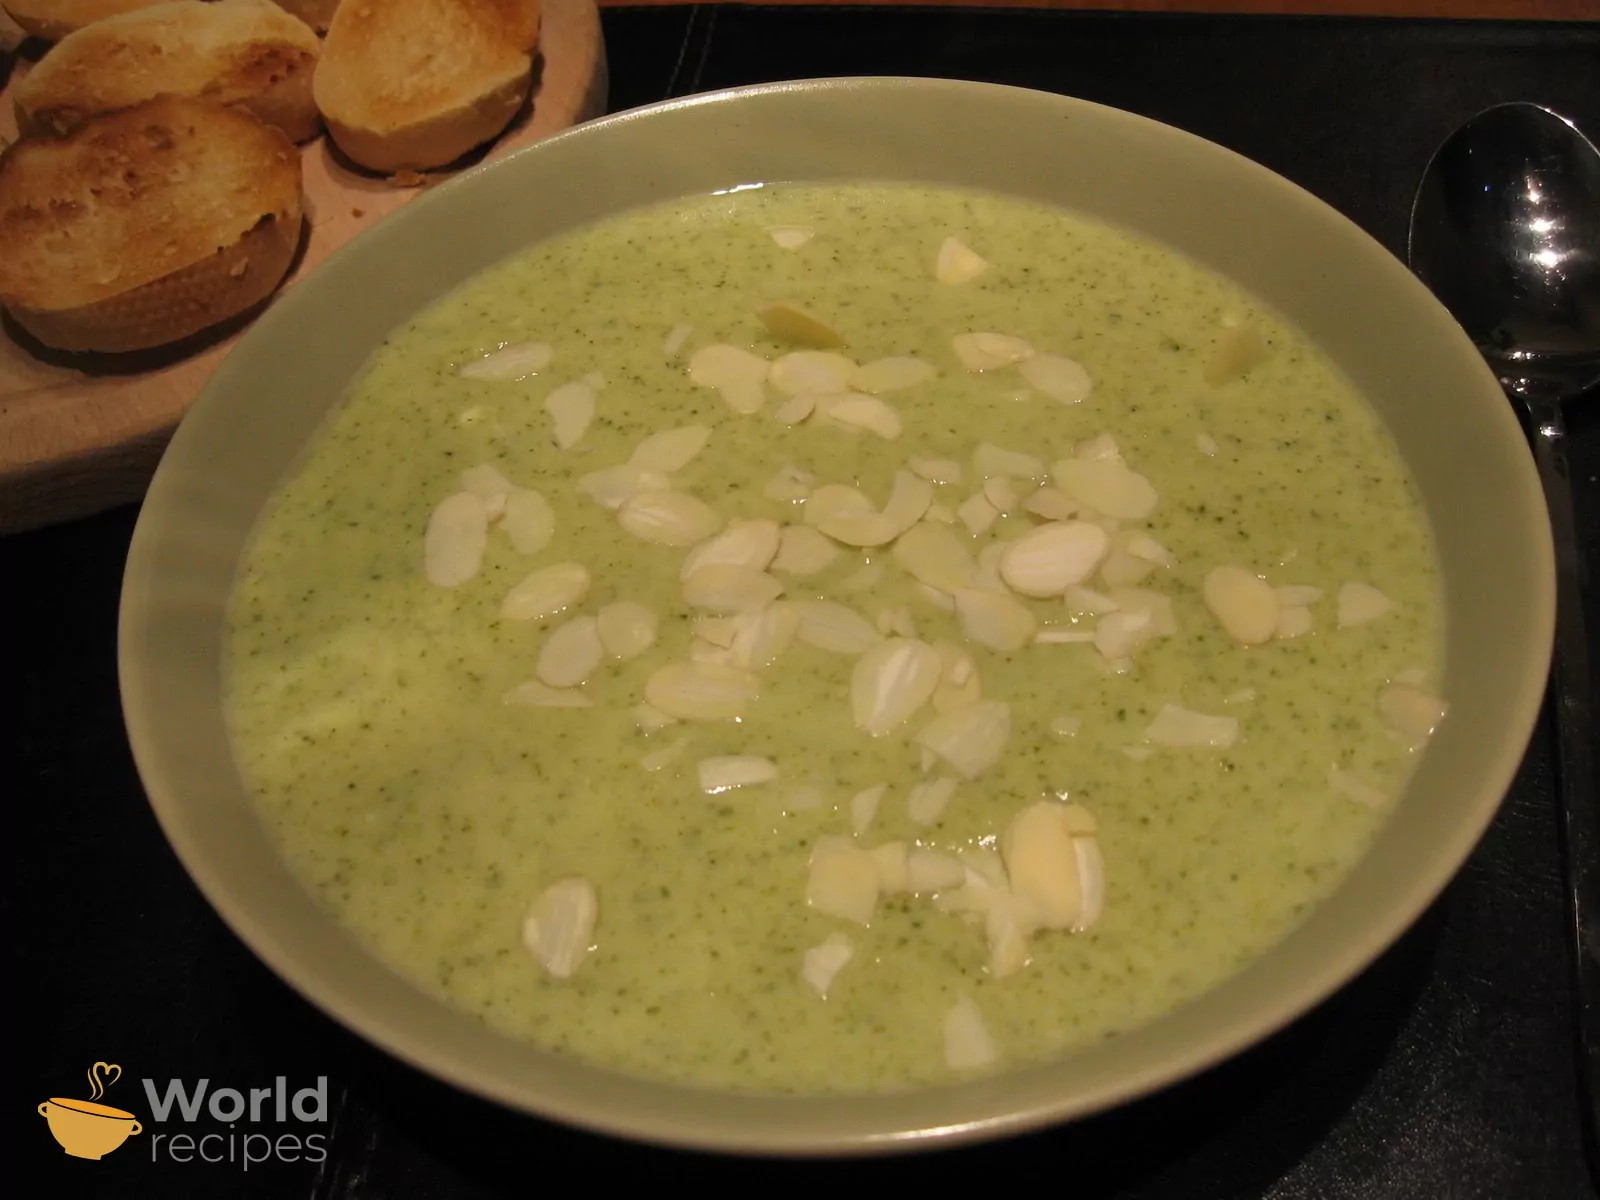 Trinta brokolių sriuba su parmezano sūriu ir migdolais pagal Beatą